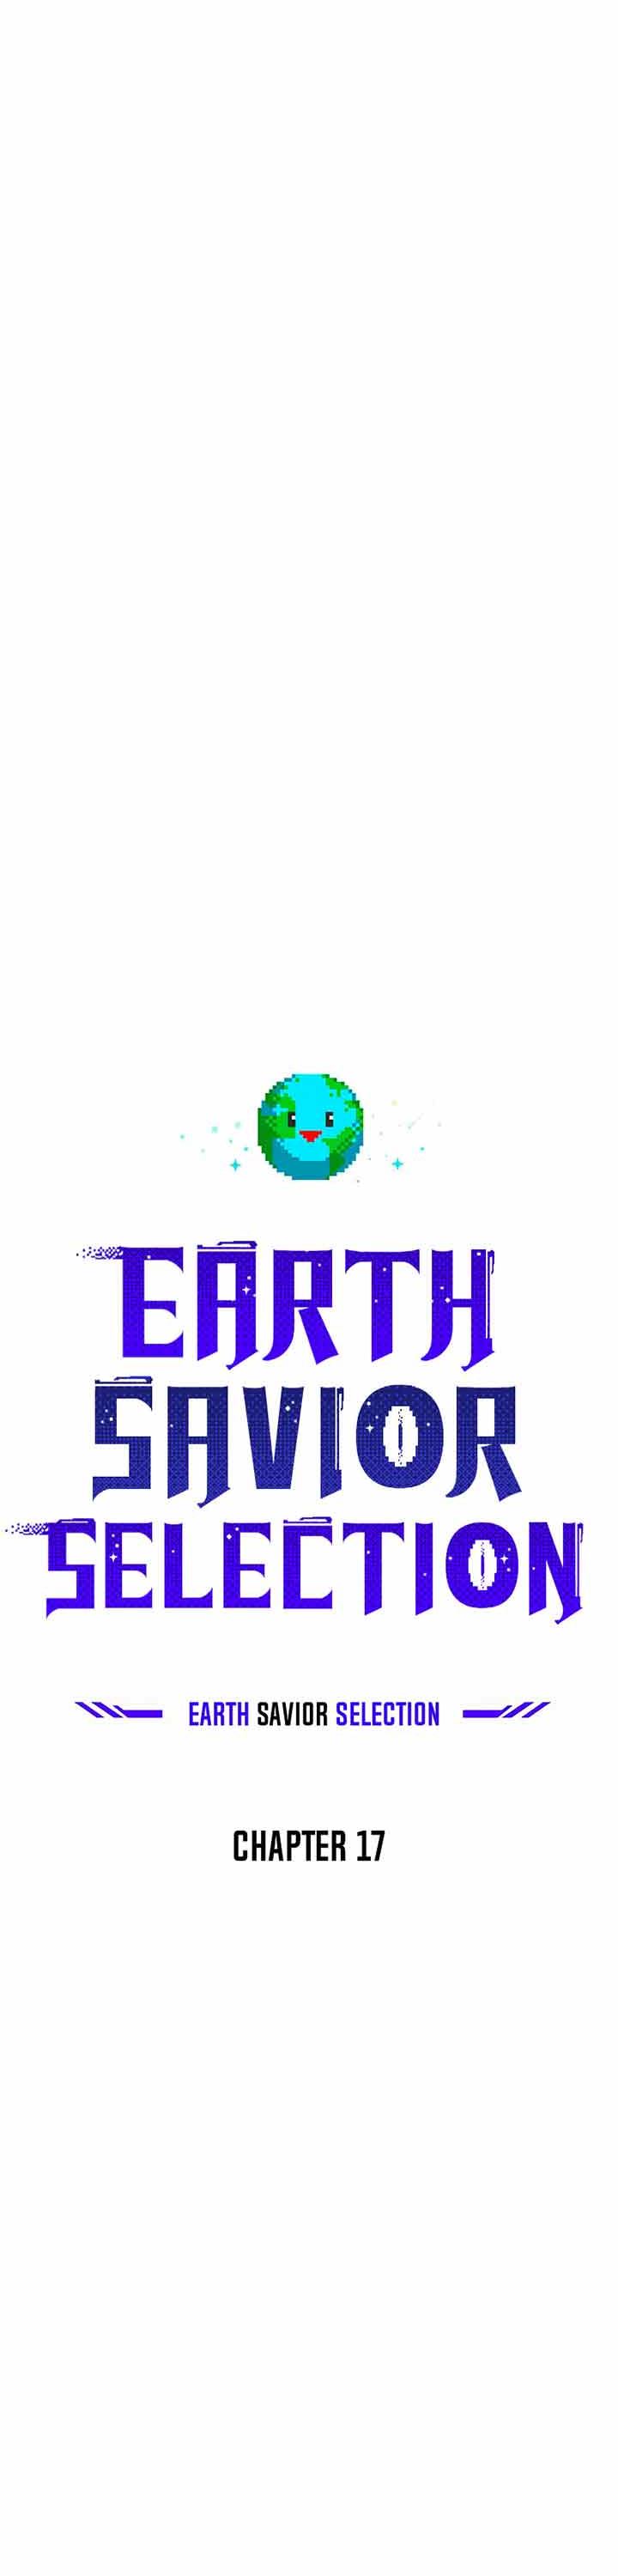 The Earth Savior Selection Chapter 17